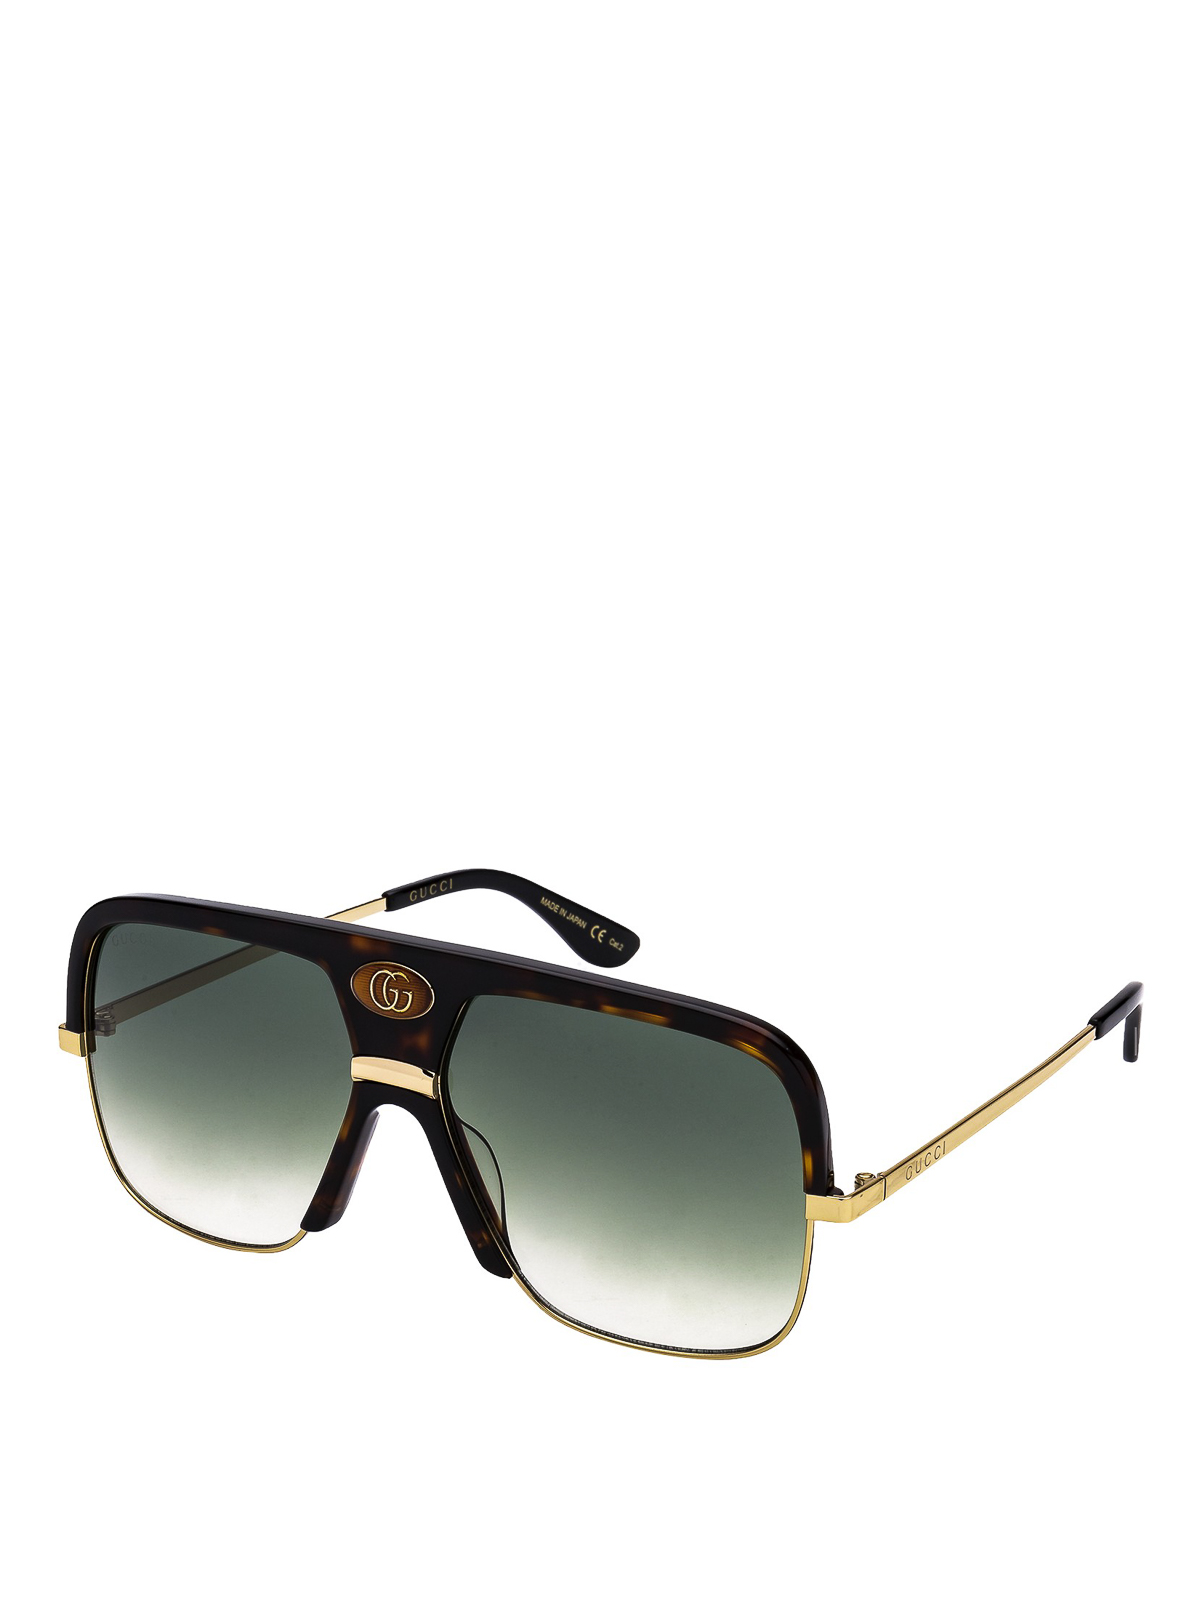 Sunglasses Gucci - Green gradient lens square sunglasses - GG0478S002